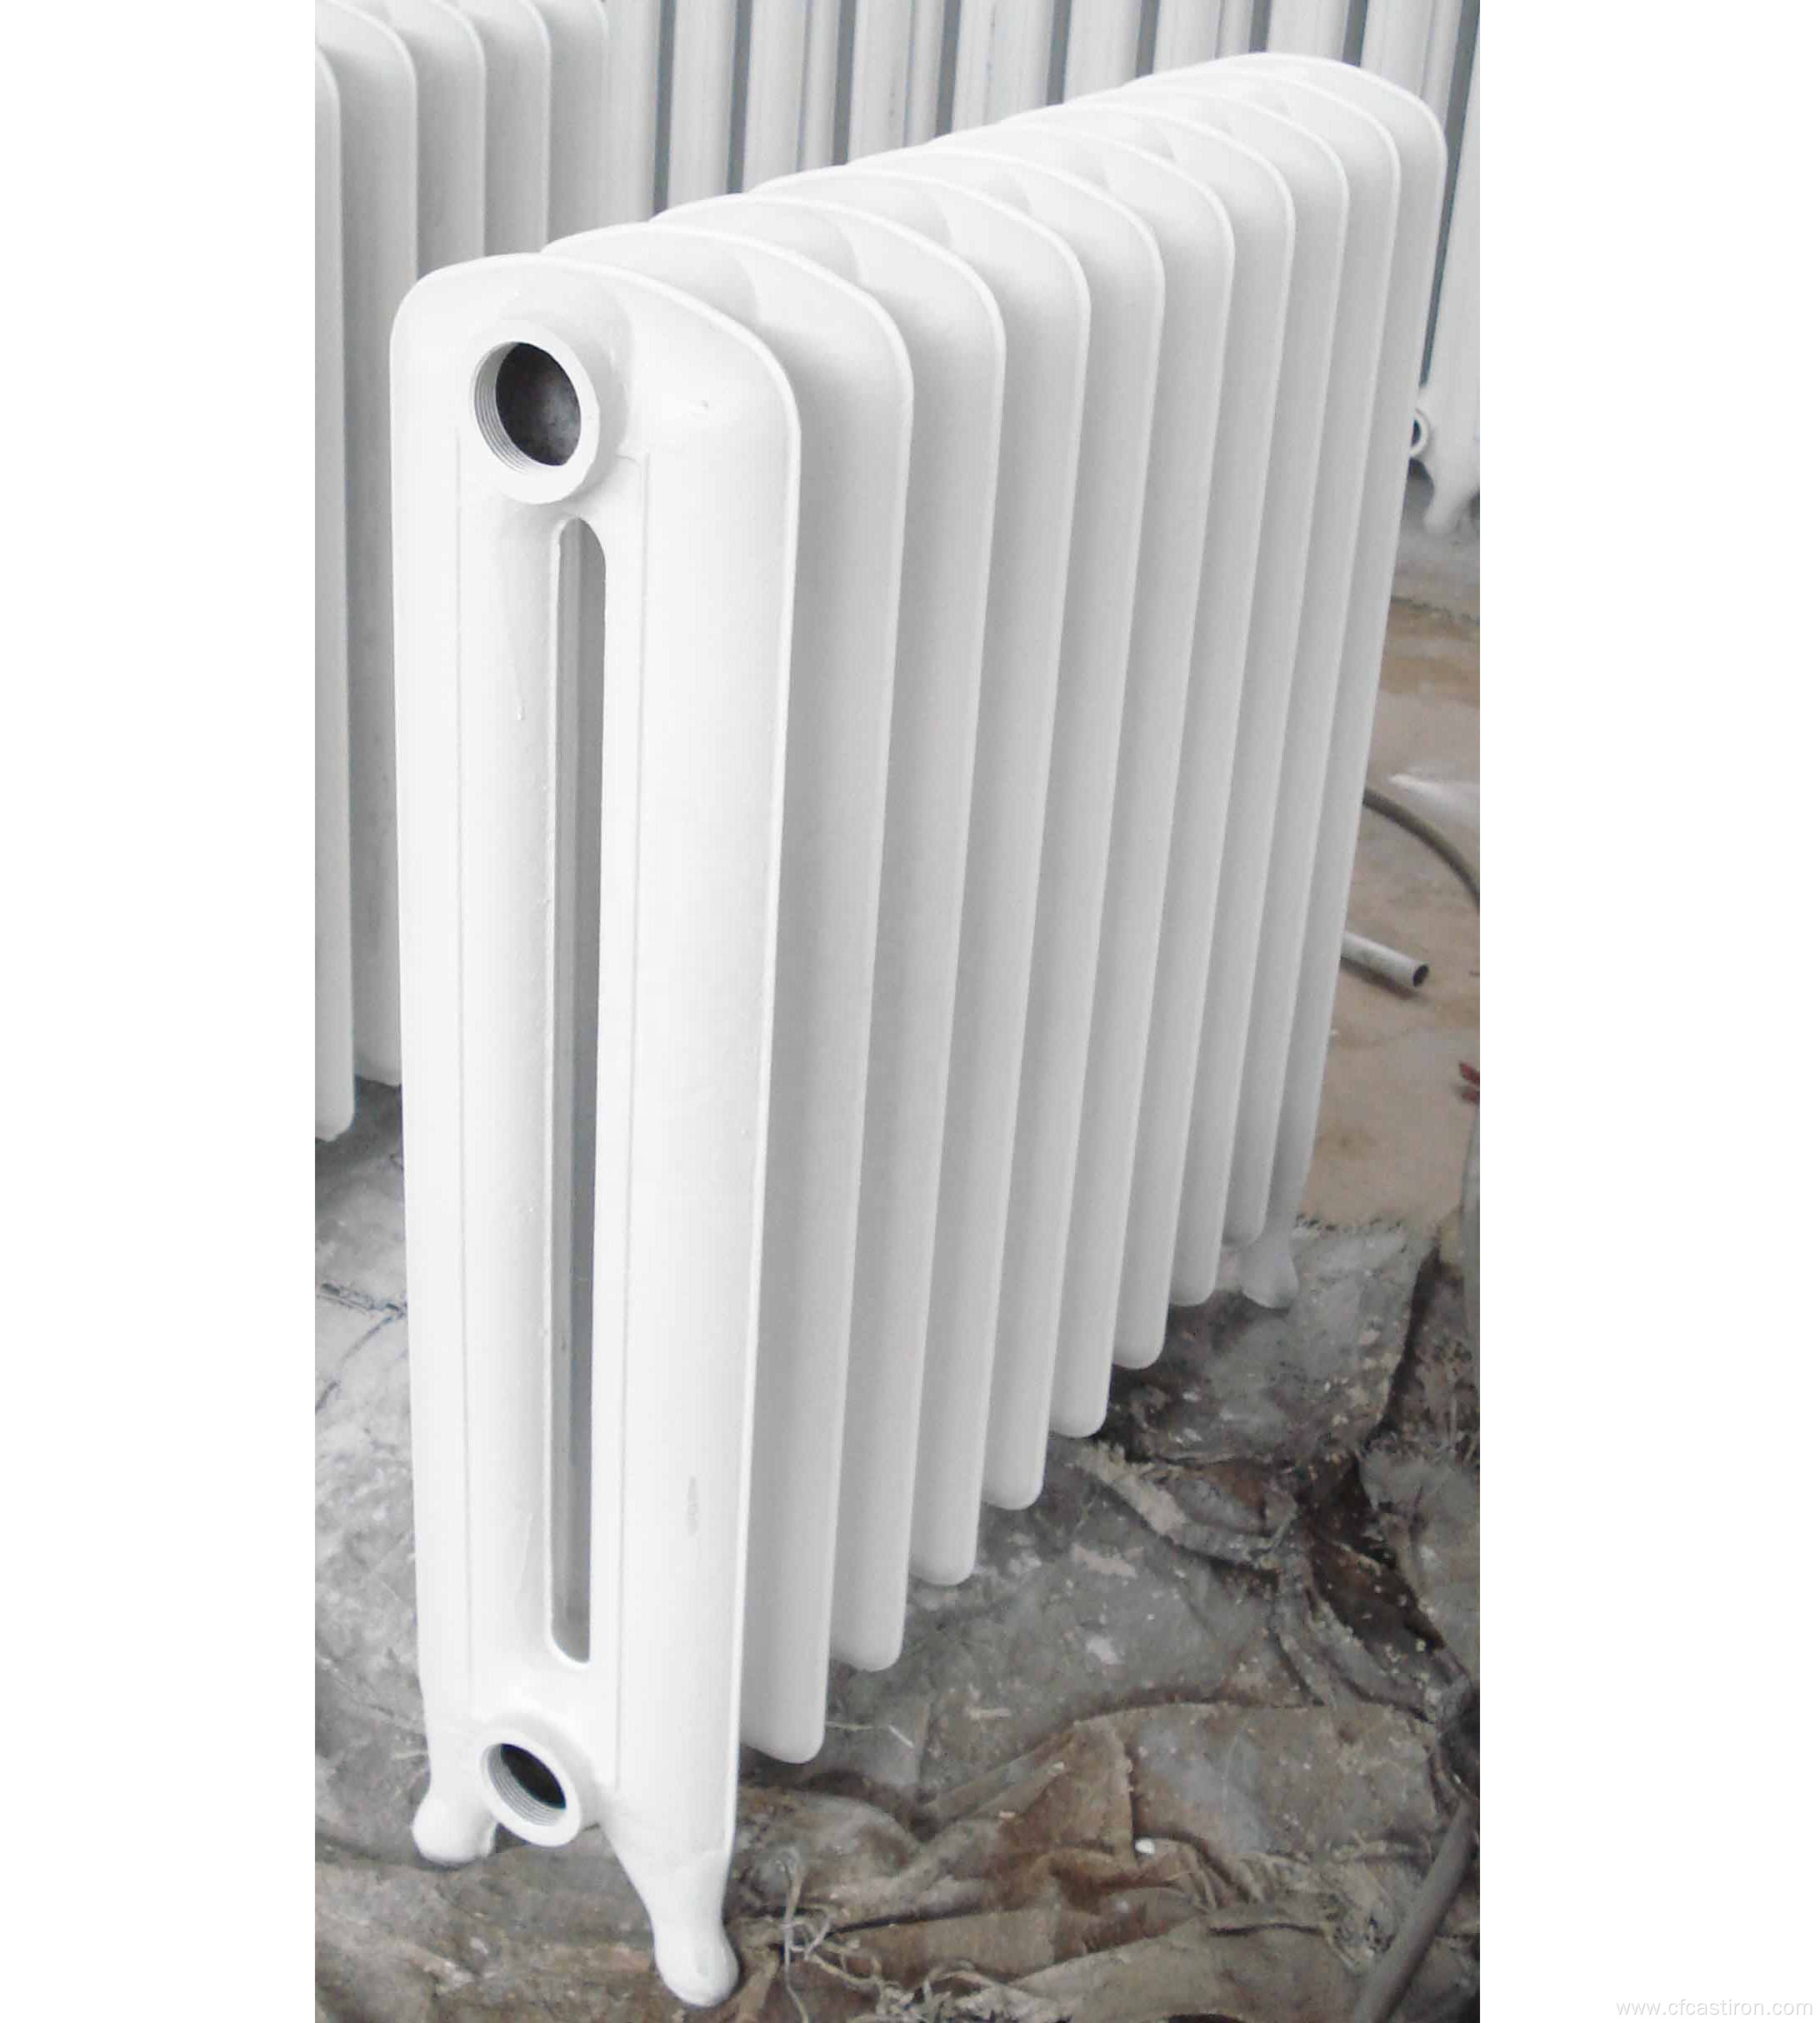 Princess 810 cast iron radiator, Princess series radiators